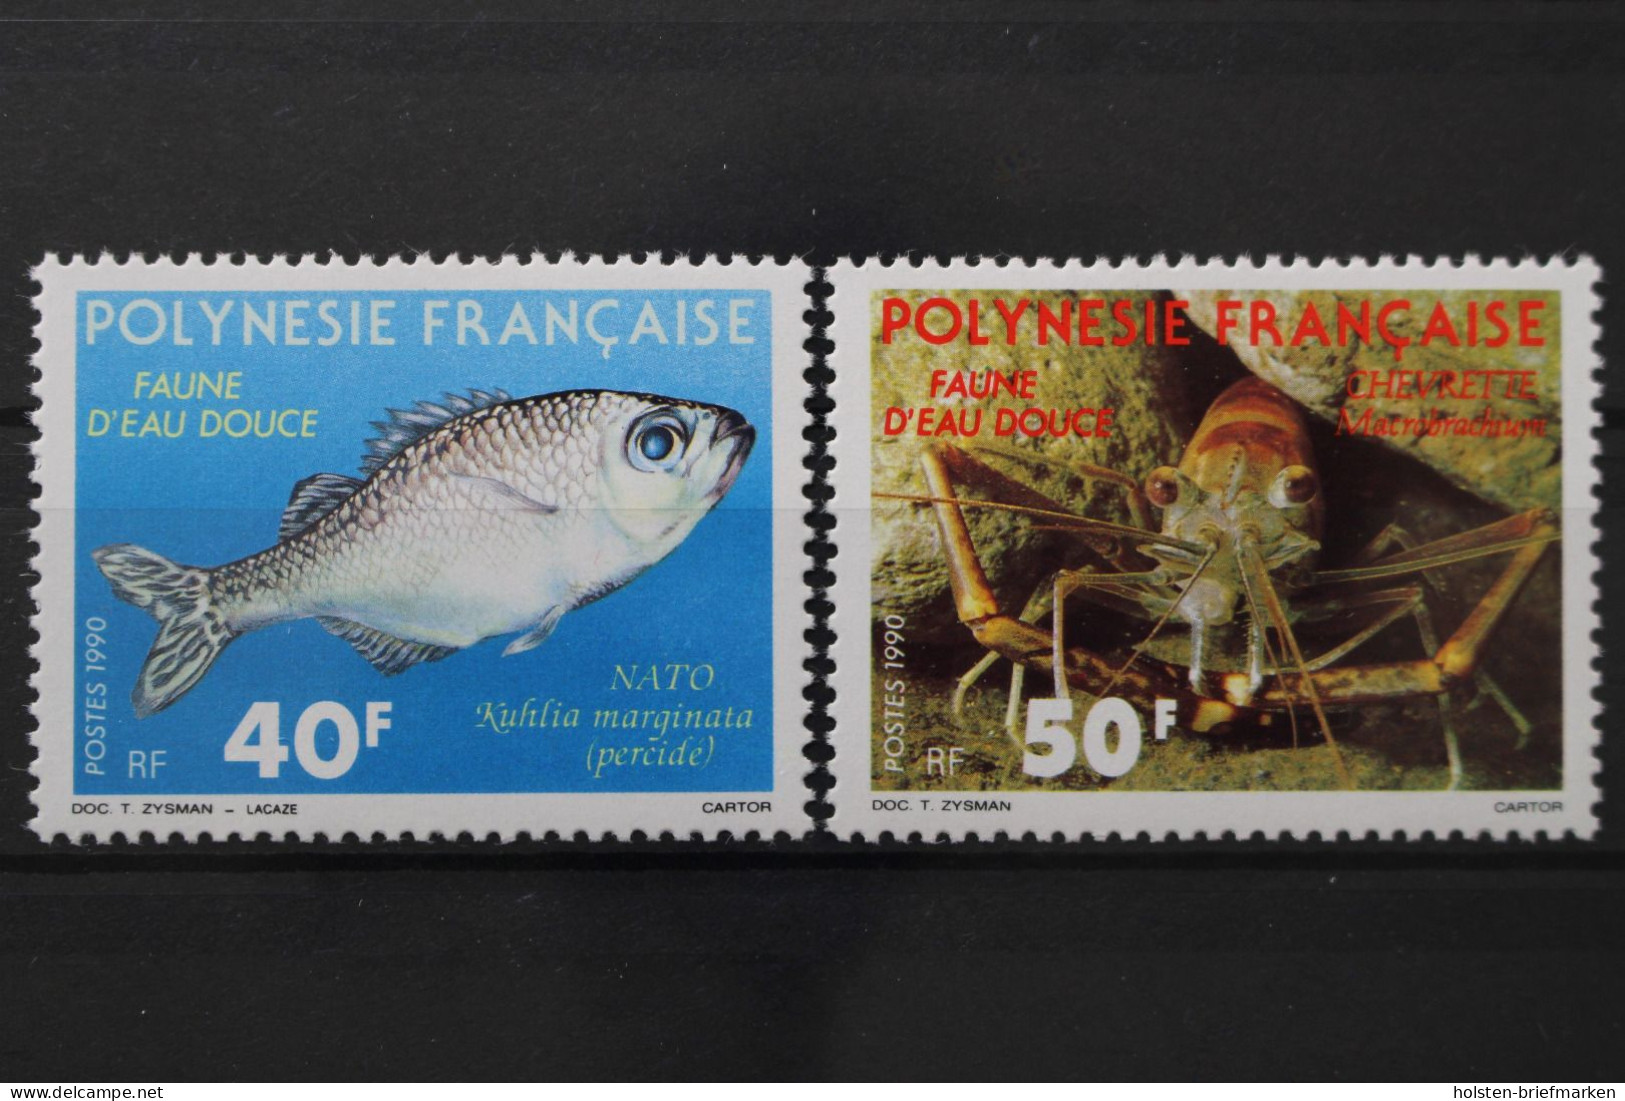 Französisch-Polynesien, MiNr. 551-552, Postfrisch - Ongebruikt